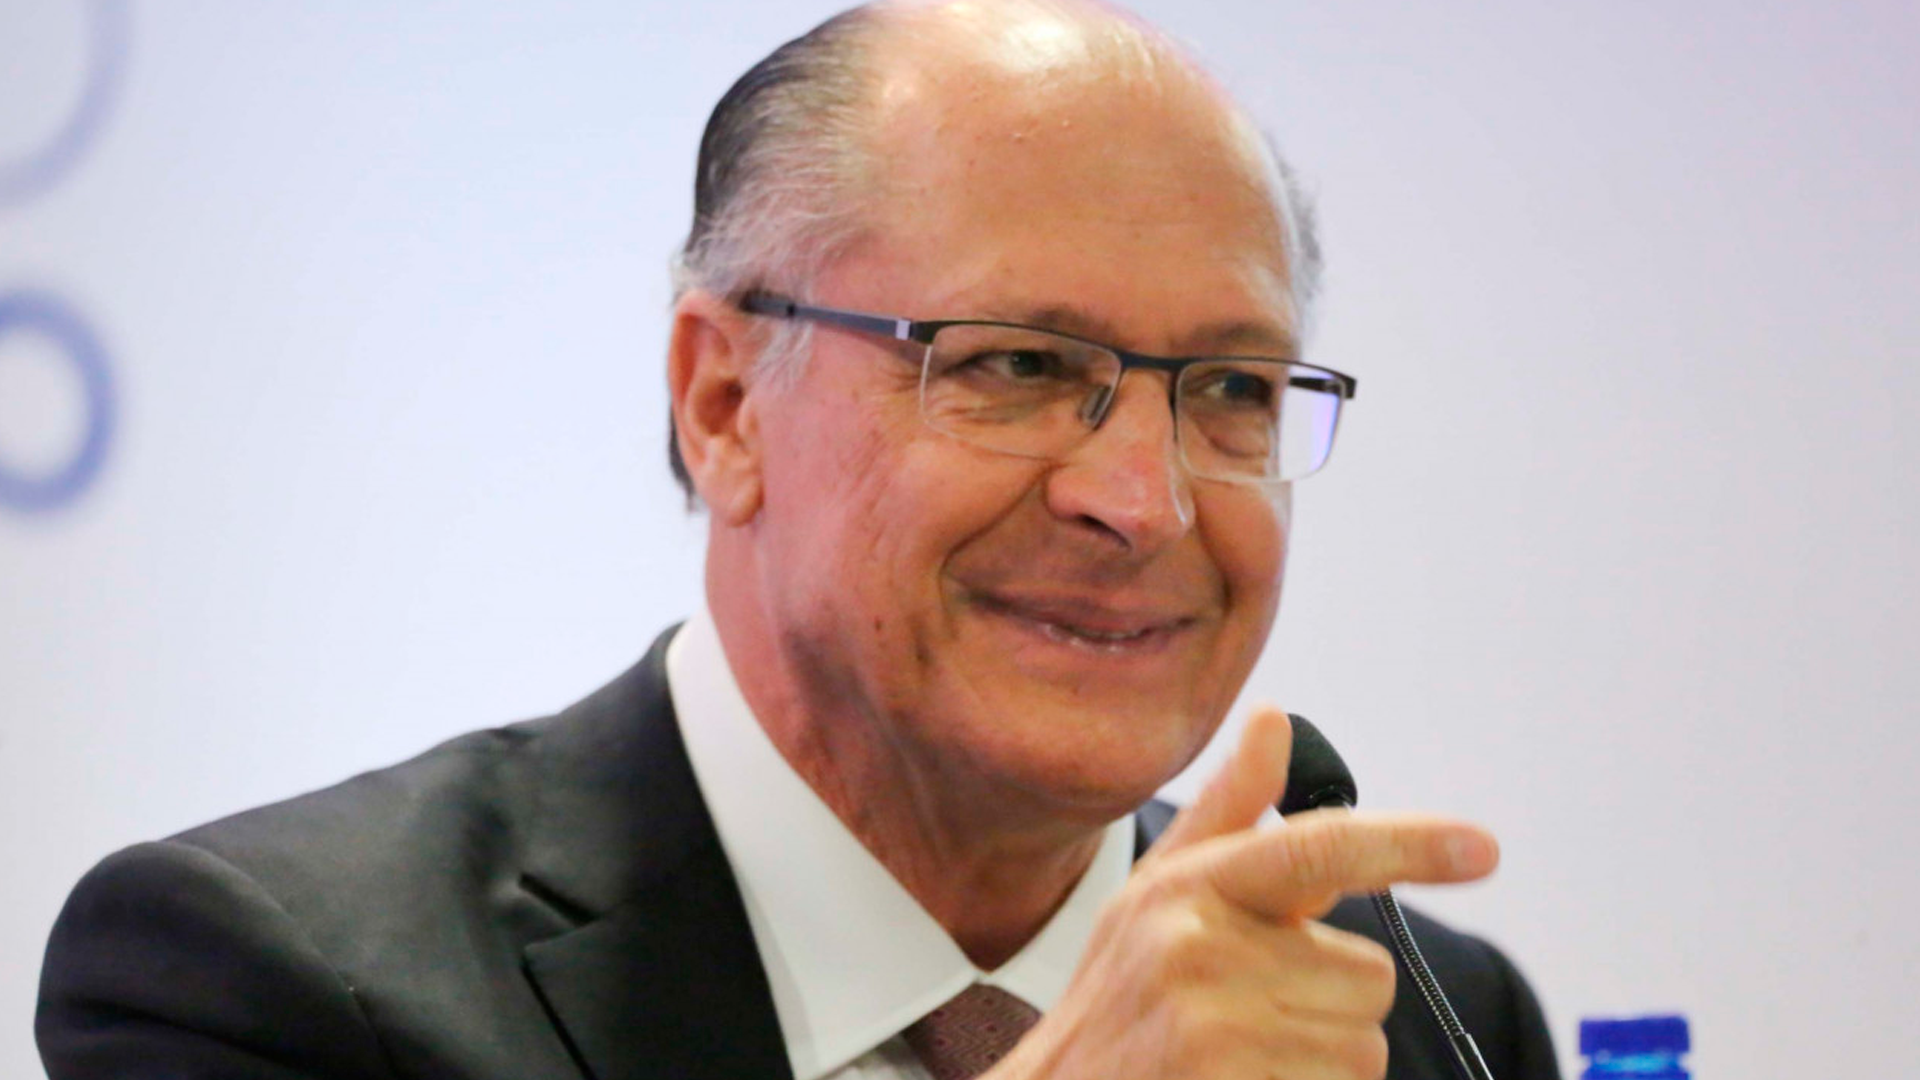 Geraldo Alckmin apontando para frente com o dedo, parecendo estar fazendo sinal de "arminha".